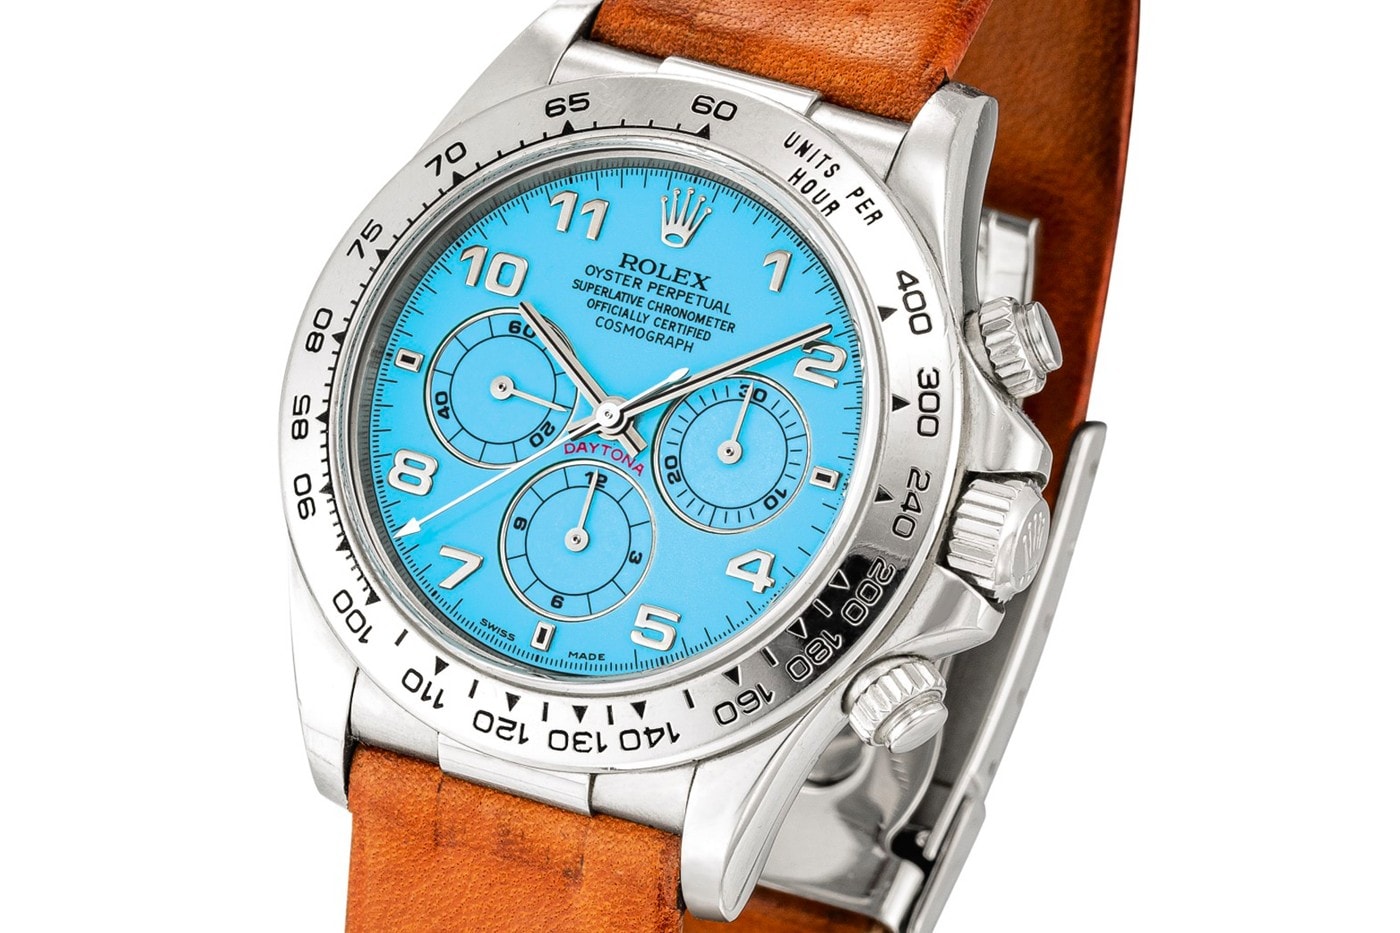 極罕有綠松石錶盤白金材質錶殼 Rolex Daytona 拍賣 $310 萬美元